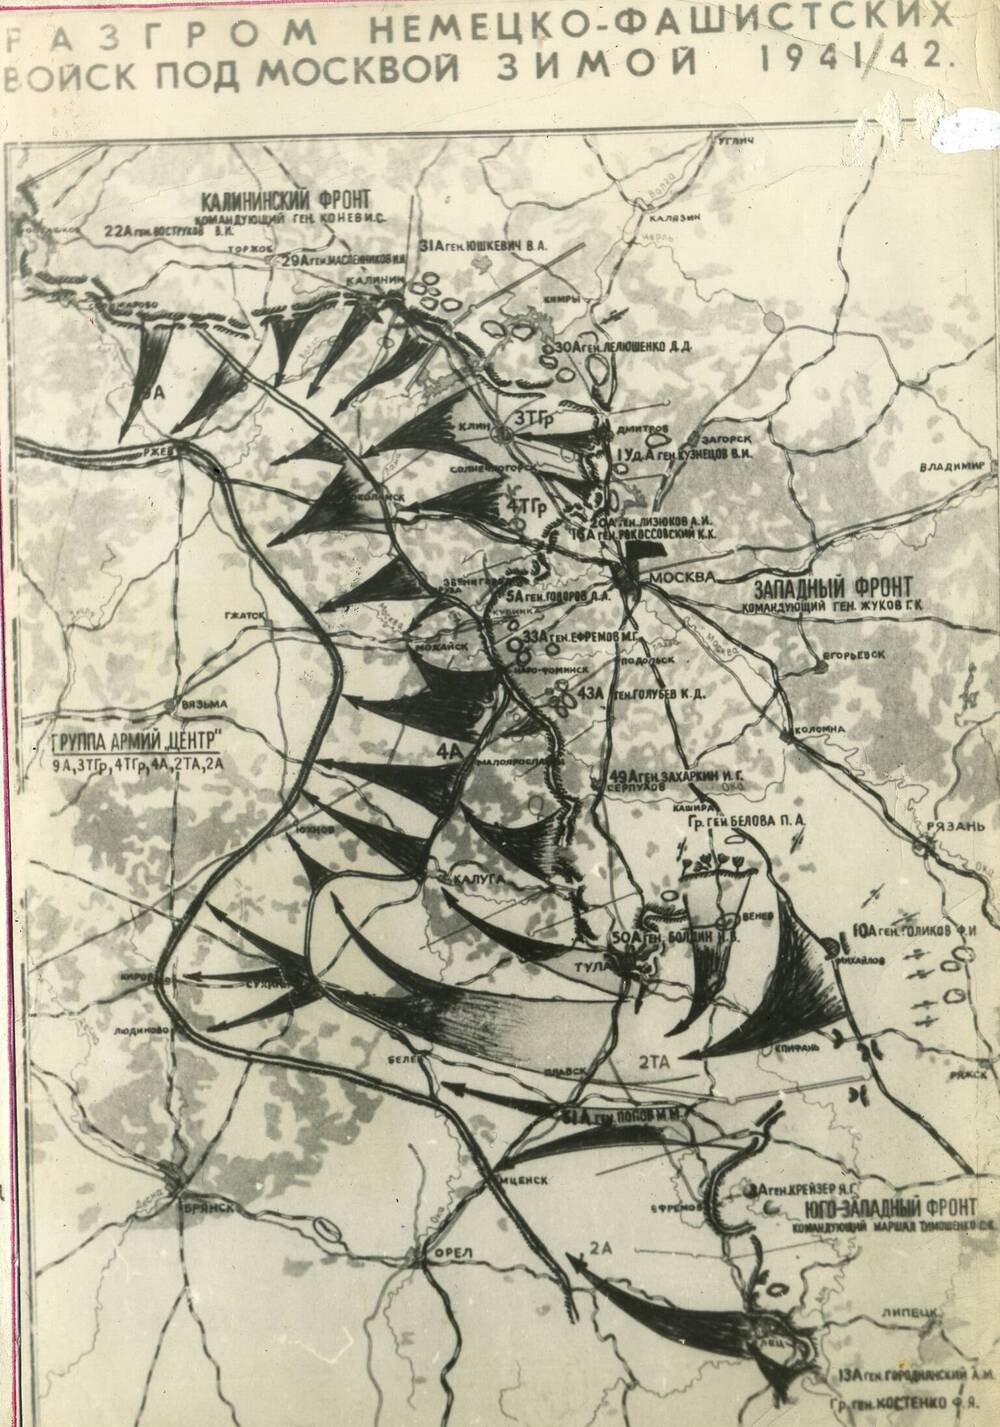 Фотокопия. Карта Разгром немецко-фашистских войск под Москвой зимой 1941-1942 гг